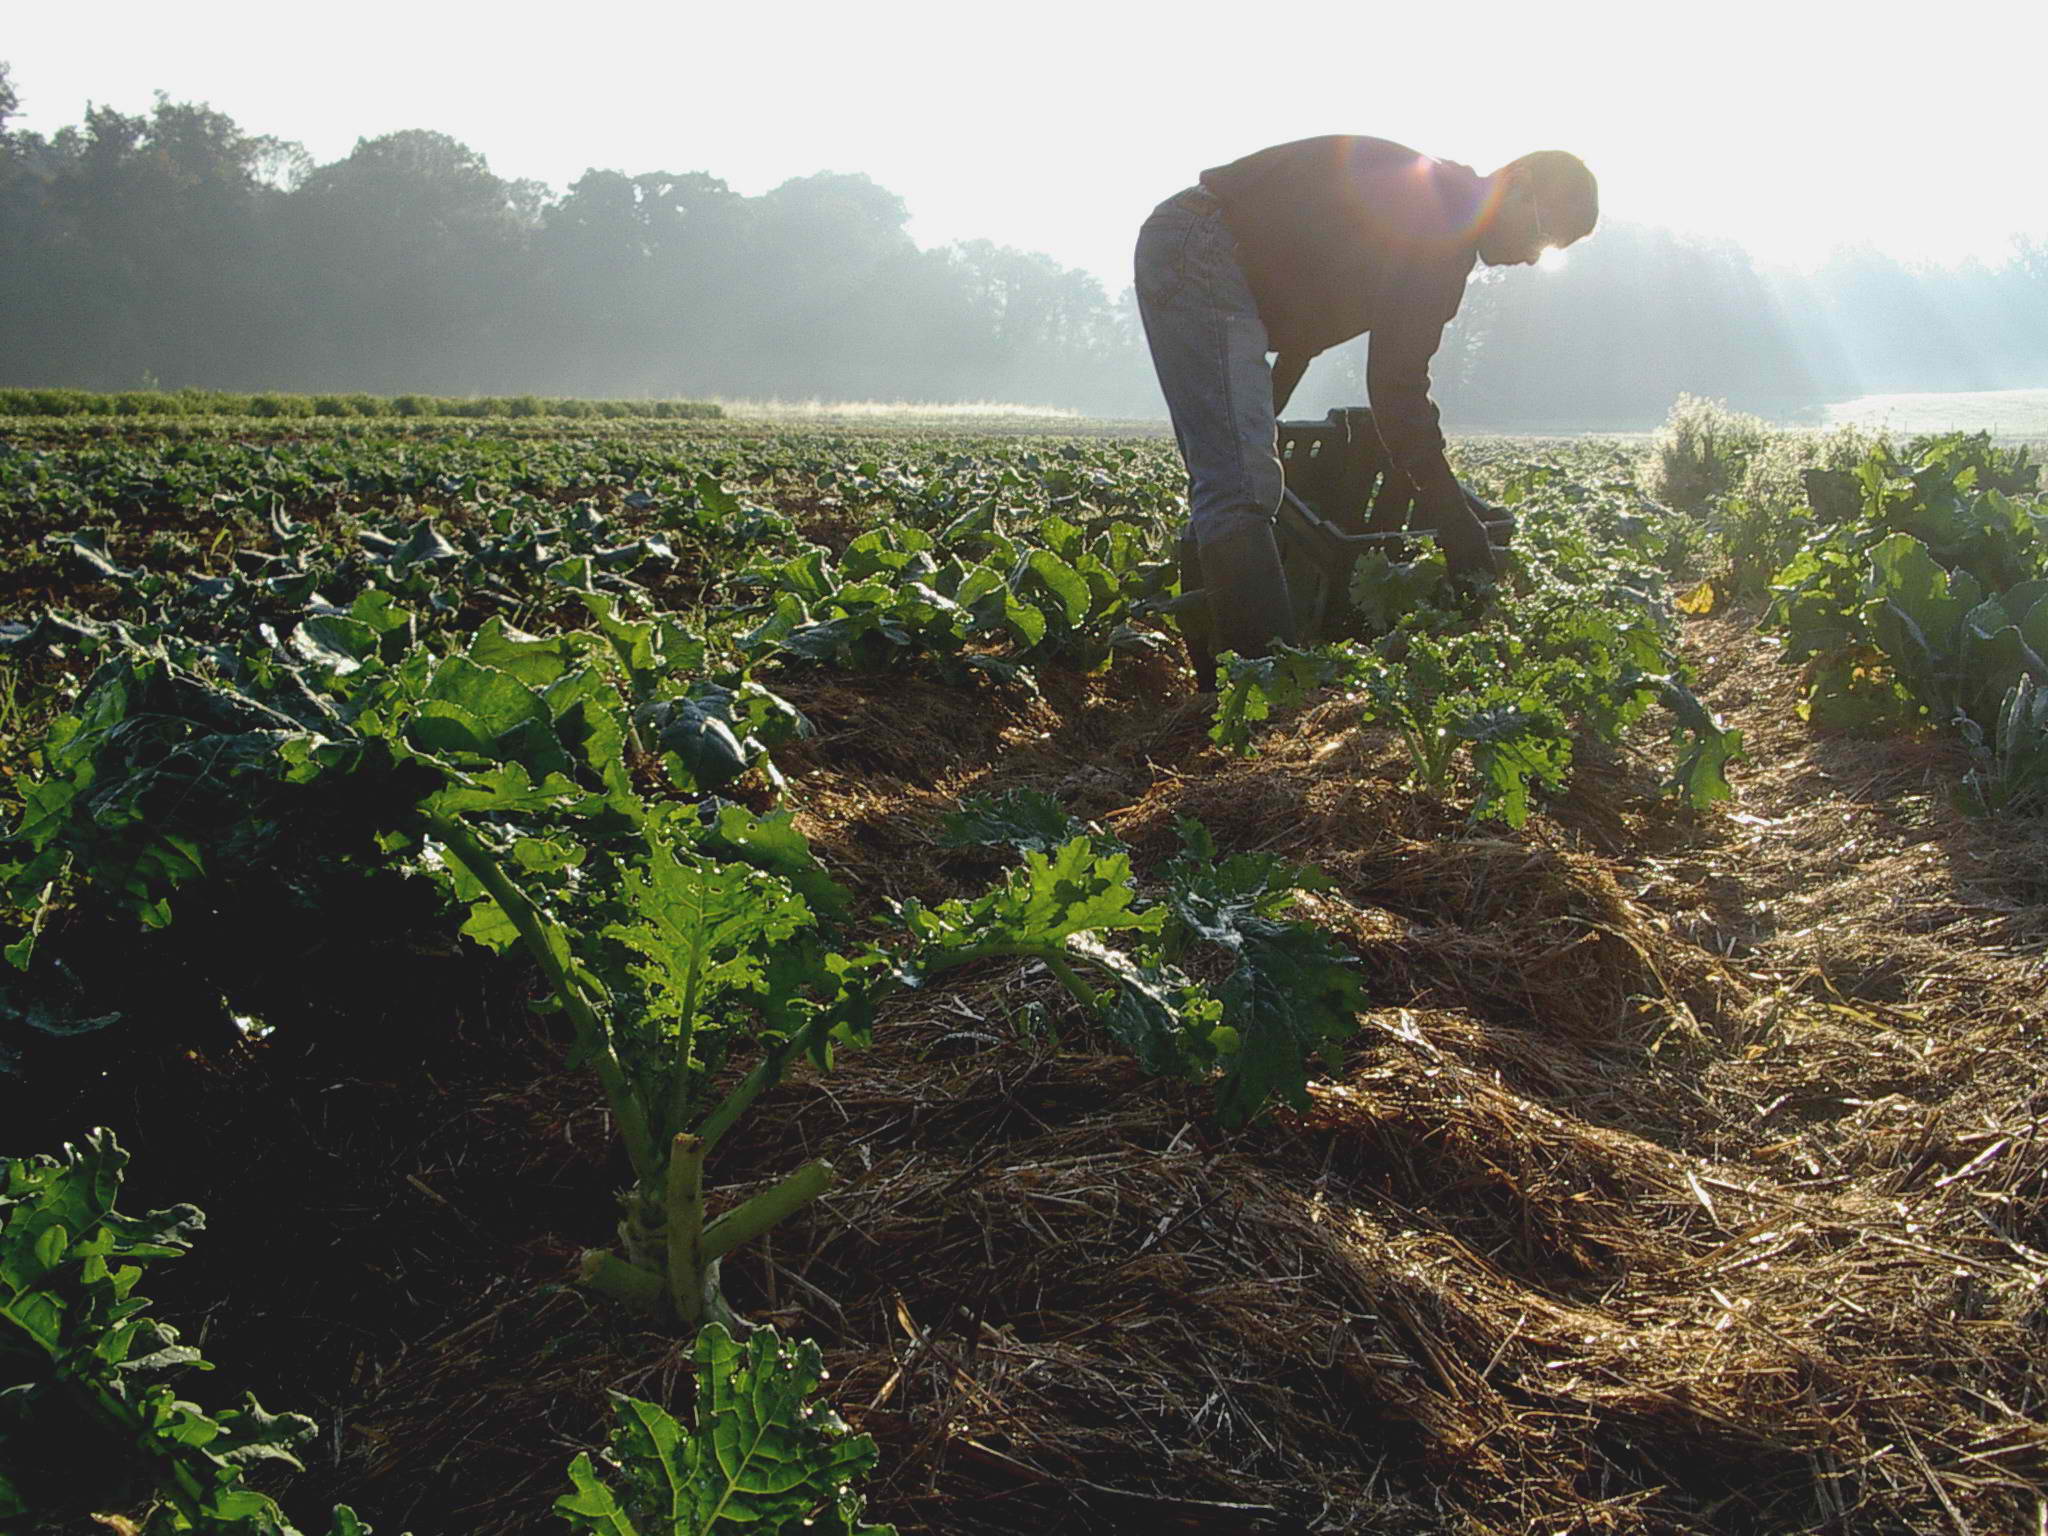 Le nuove frontiere dell’Agroecologia “per la rinascita del Sud”: 4 giorni di convegni fra Napoli e Capua sull’Agricoltura Biodinamica